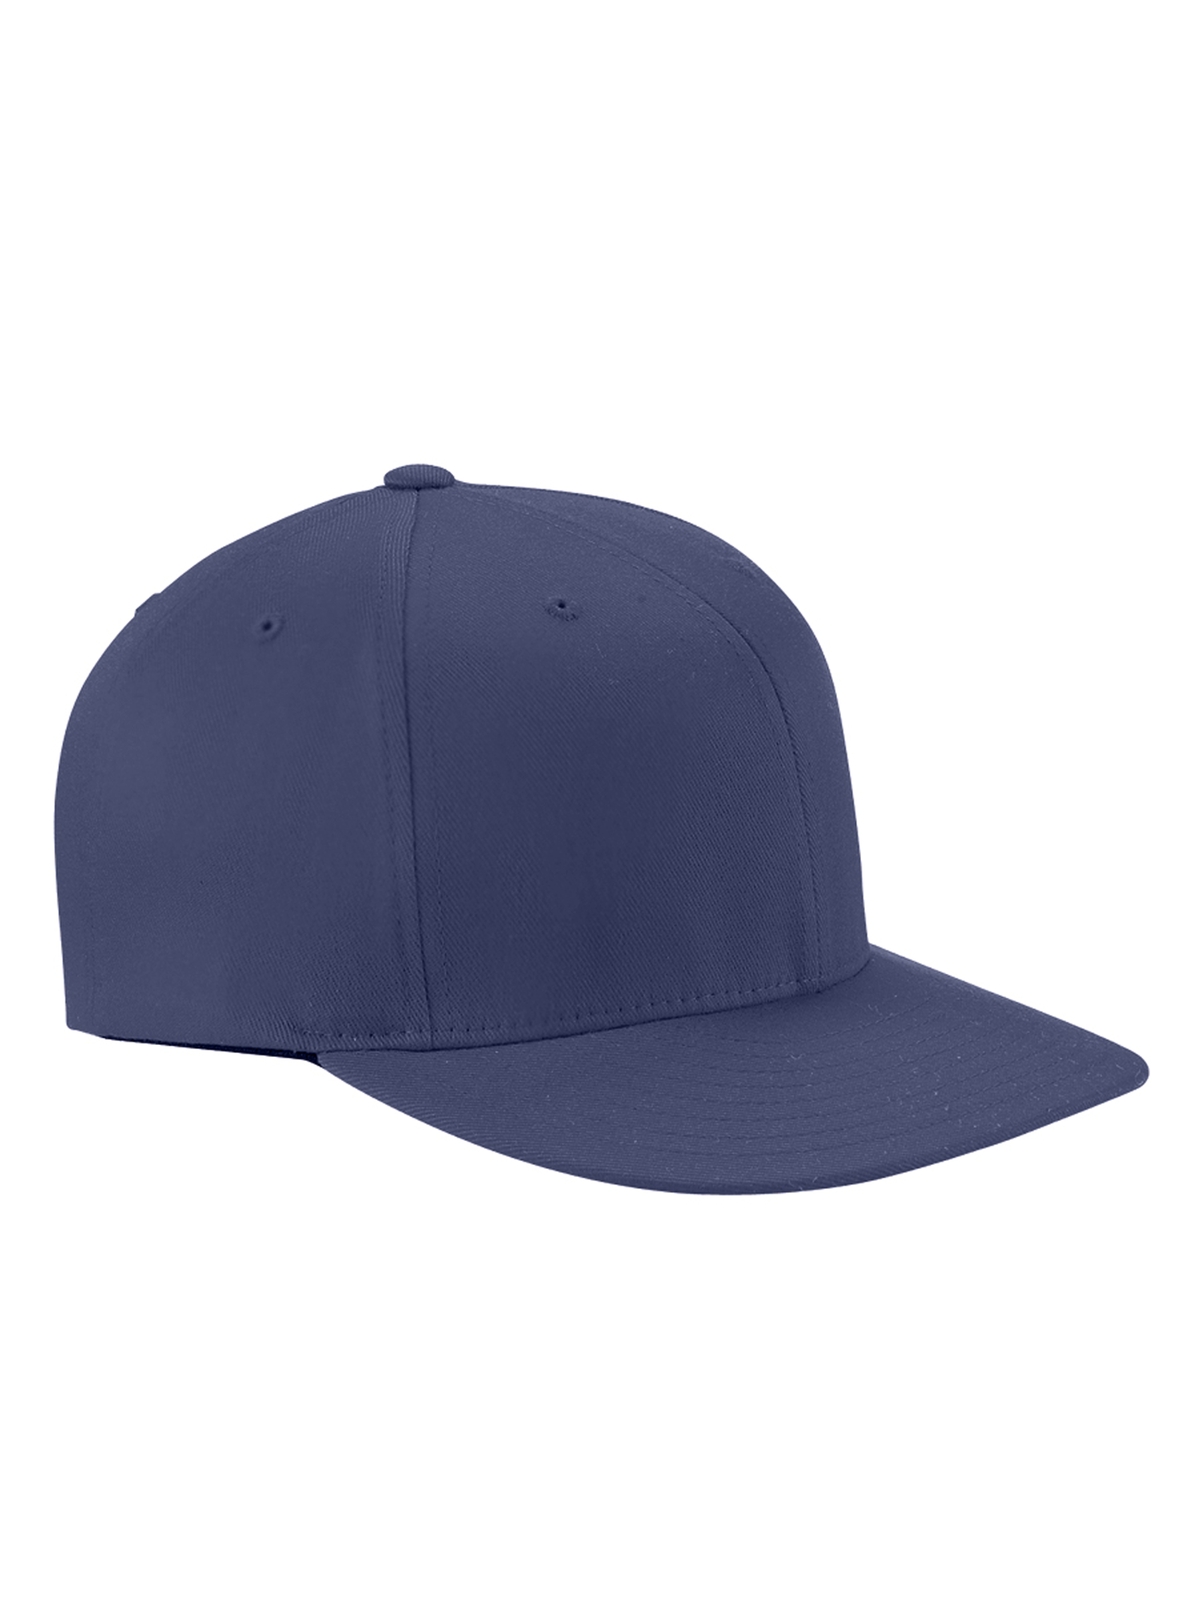 FlexFit Wooly Twill Pro Baseball On-Field Shape Cap with Flat Bill